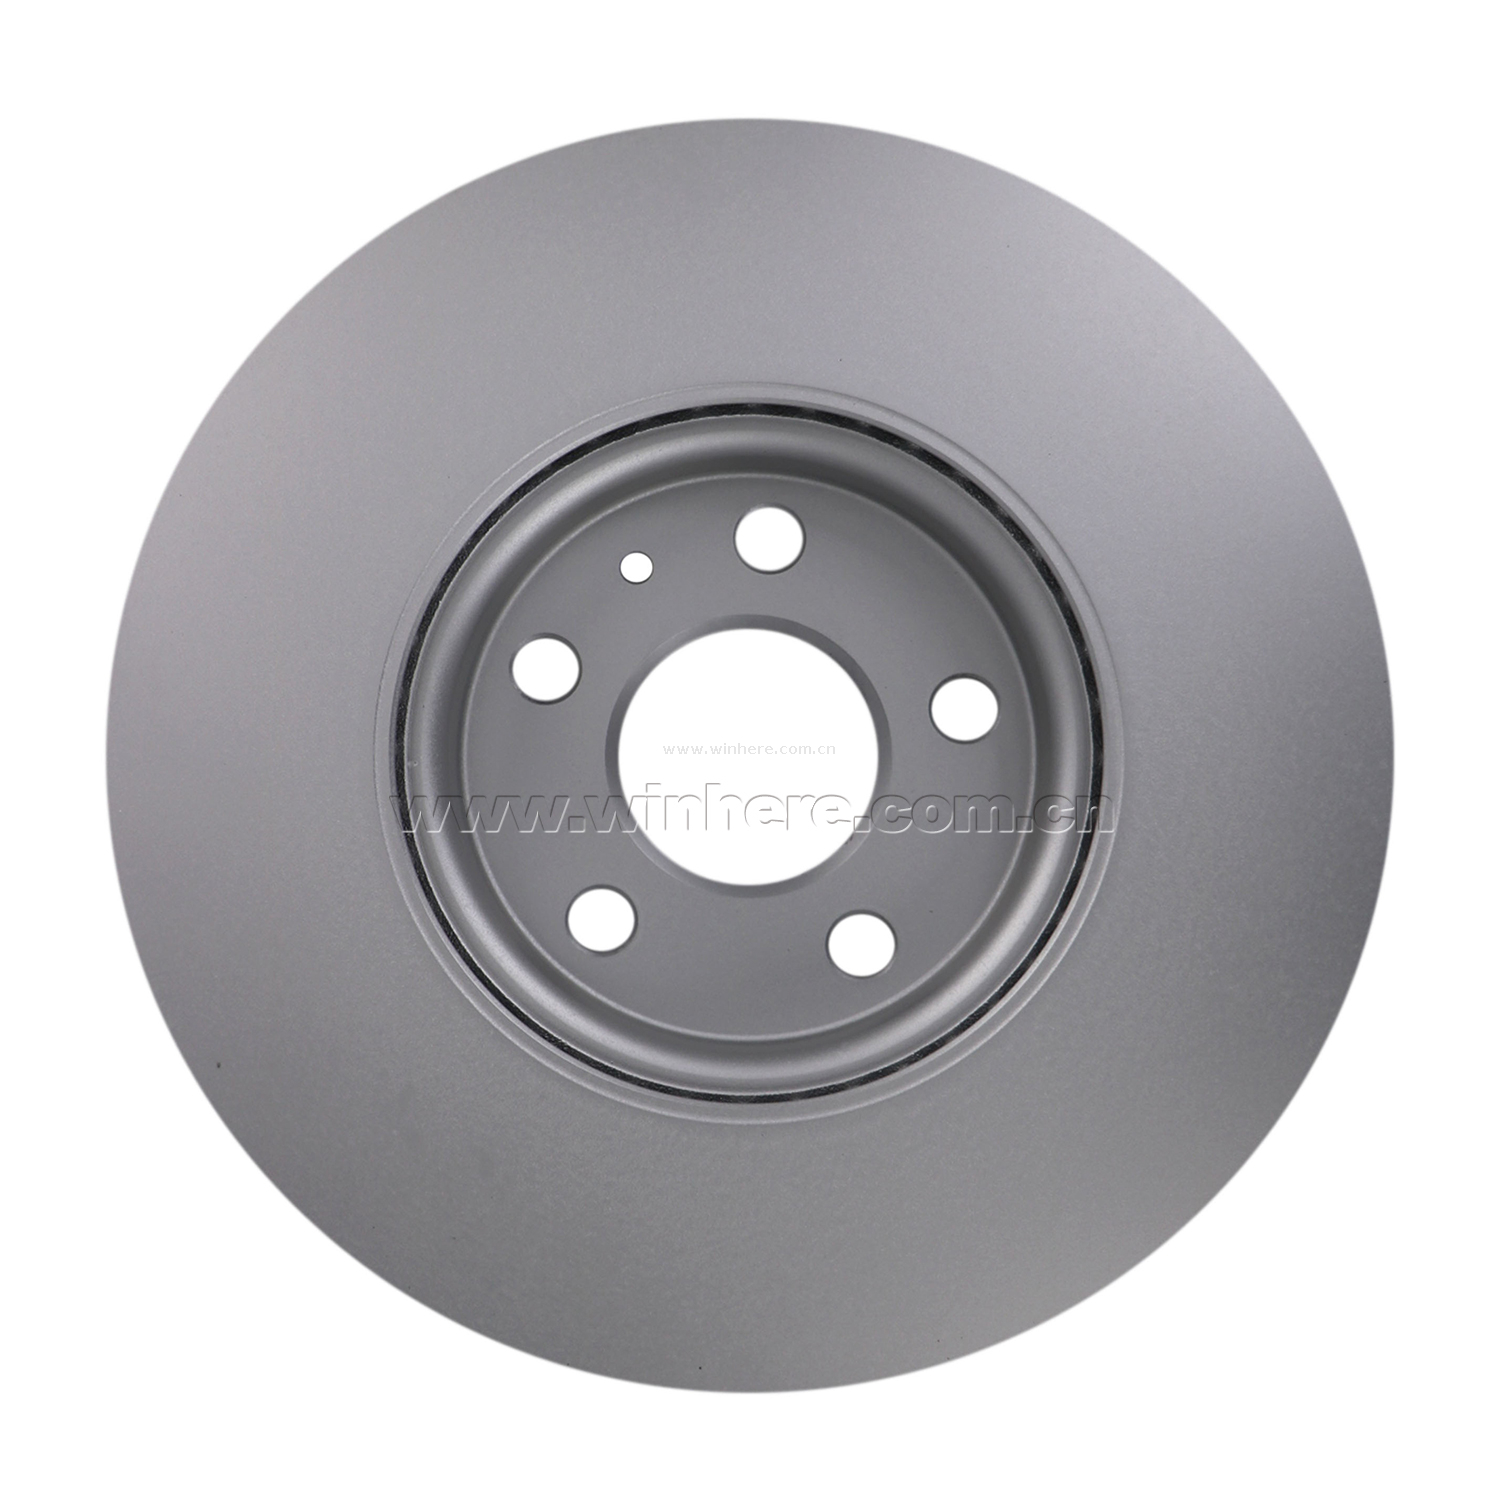 Volvo Oem Aluminum Brake Discs